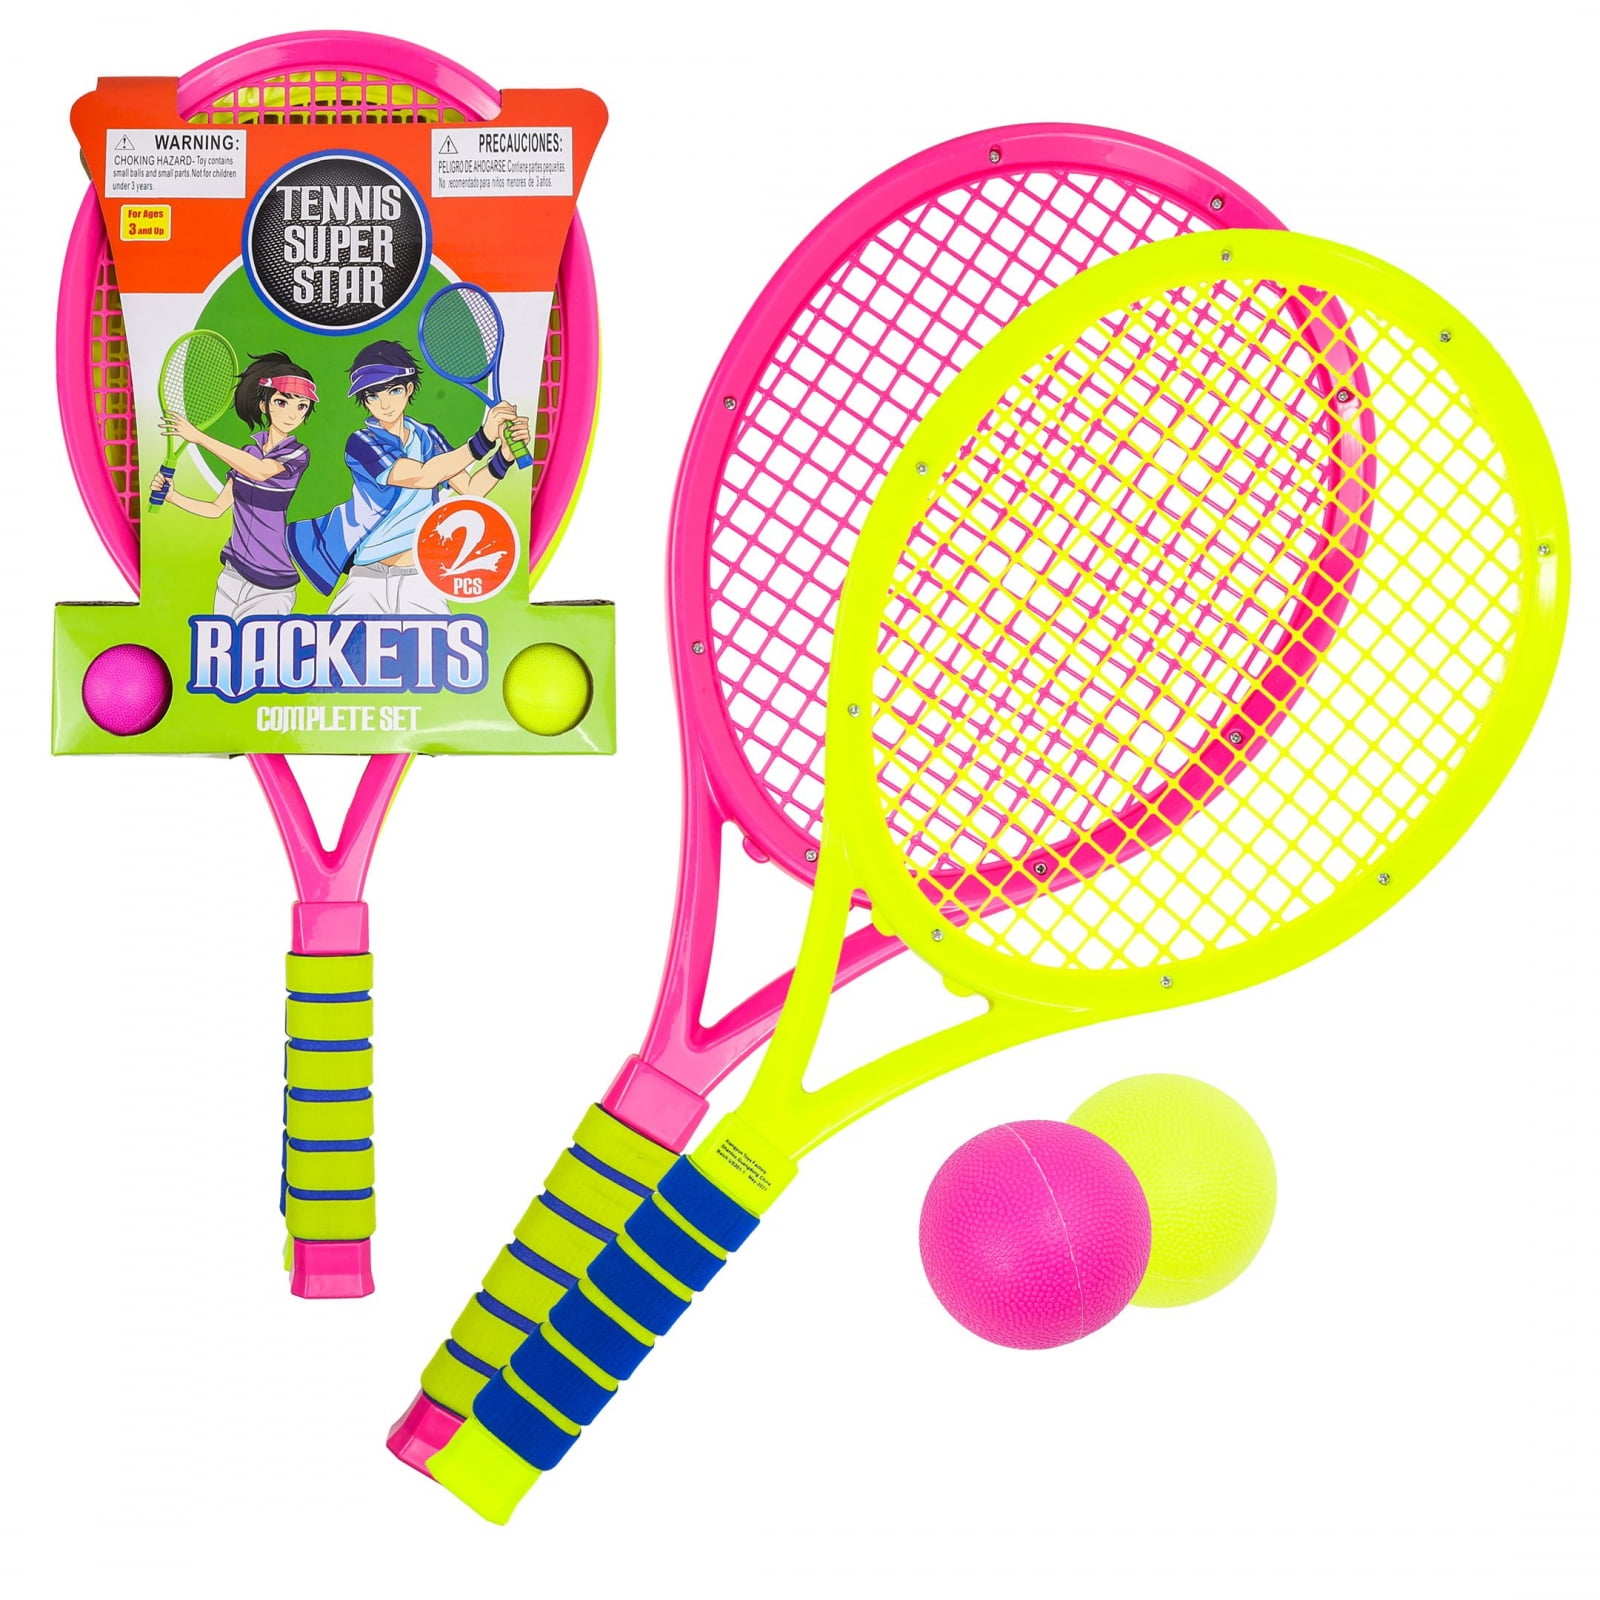 Kids Children's Junior Tennis Set 2 Racket Raquets Ball Bag Outdoor Garden Beach 